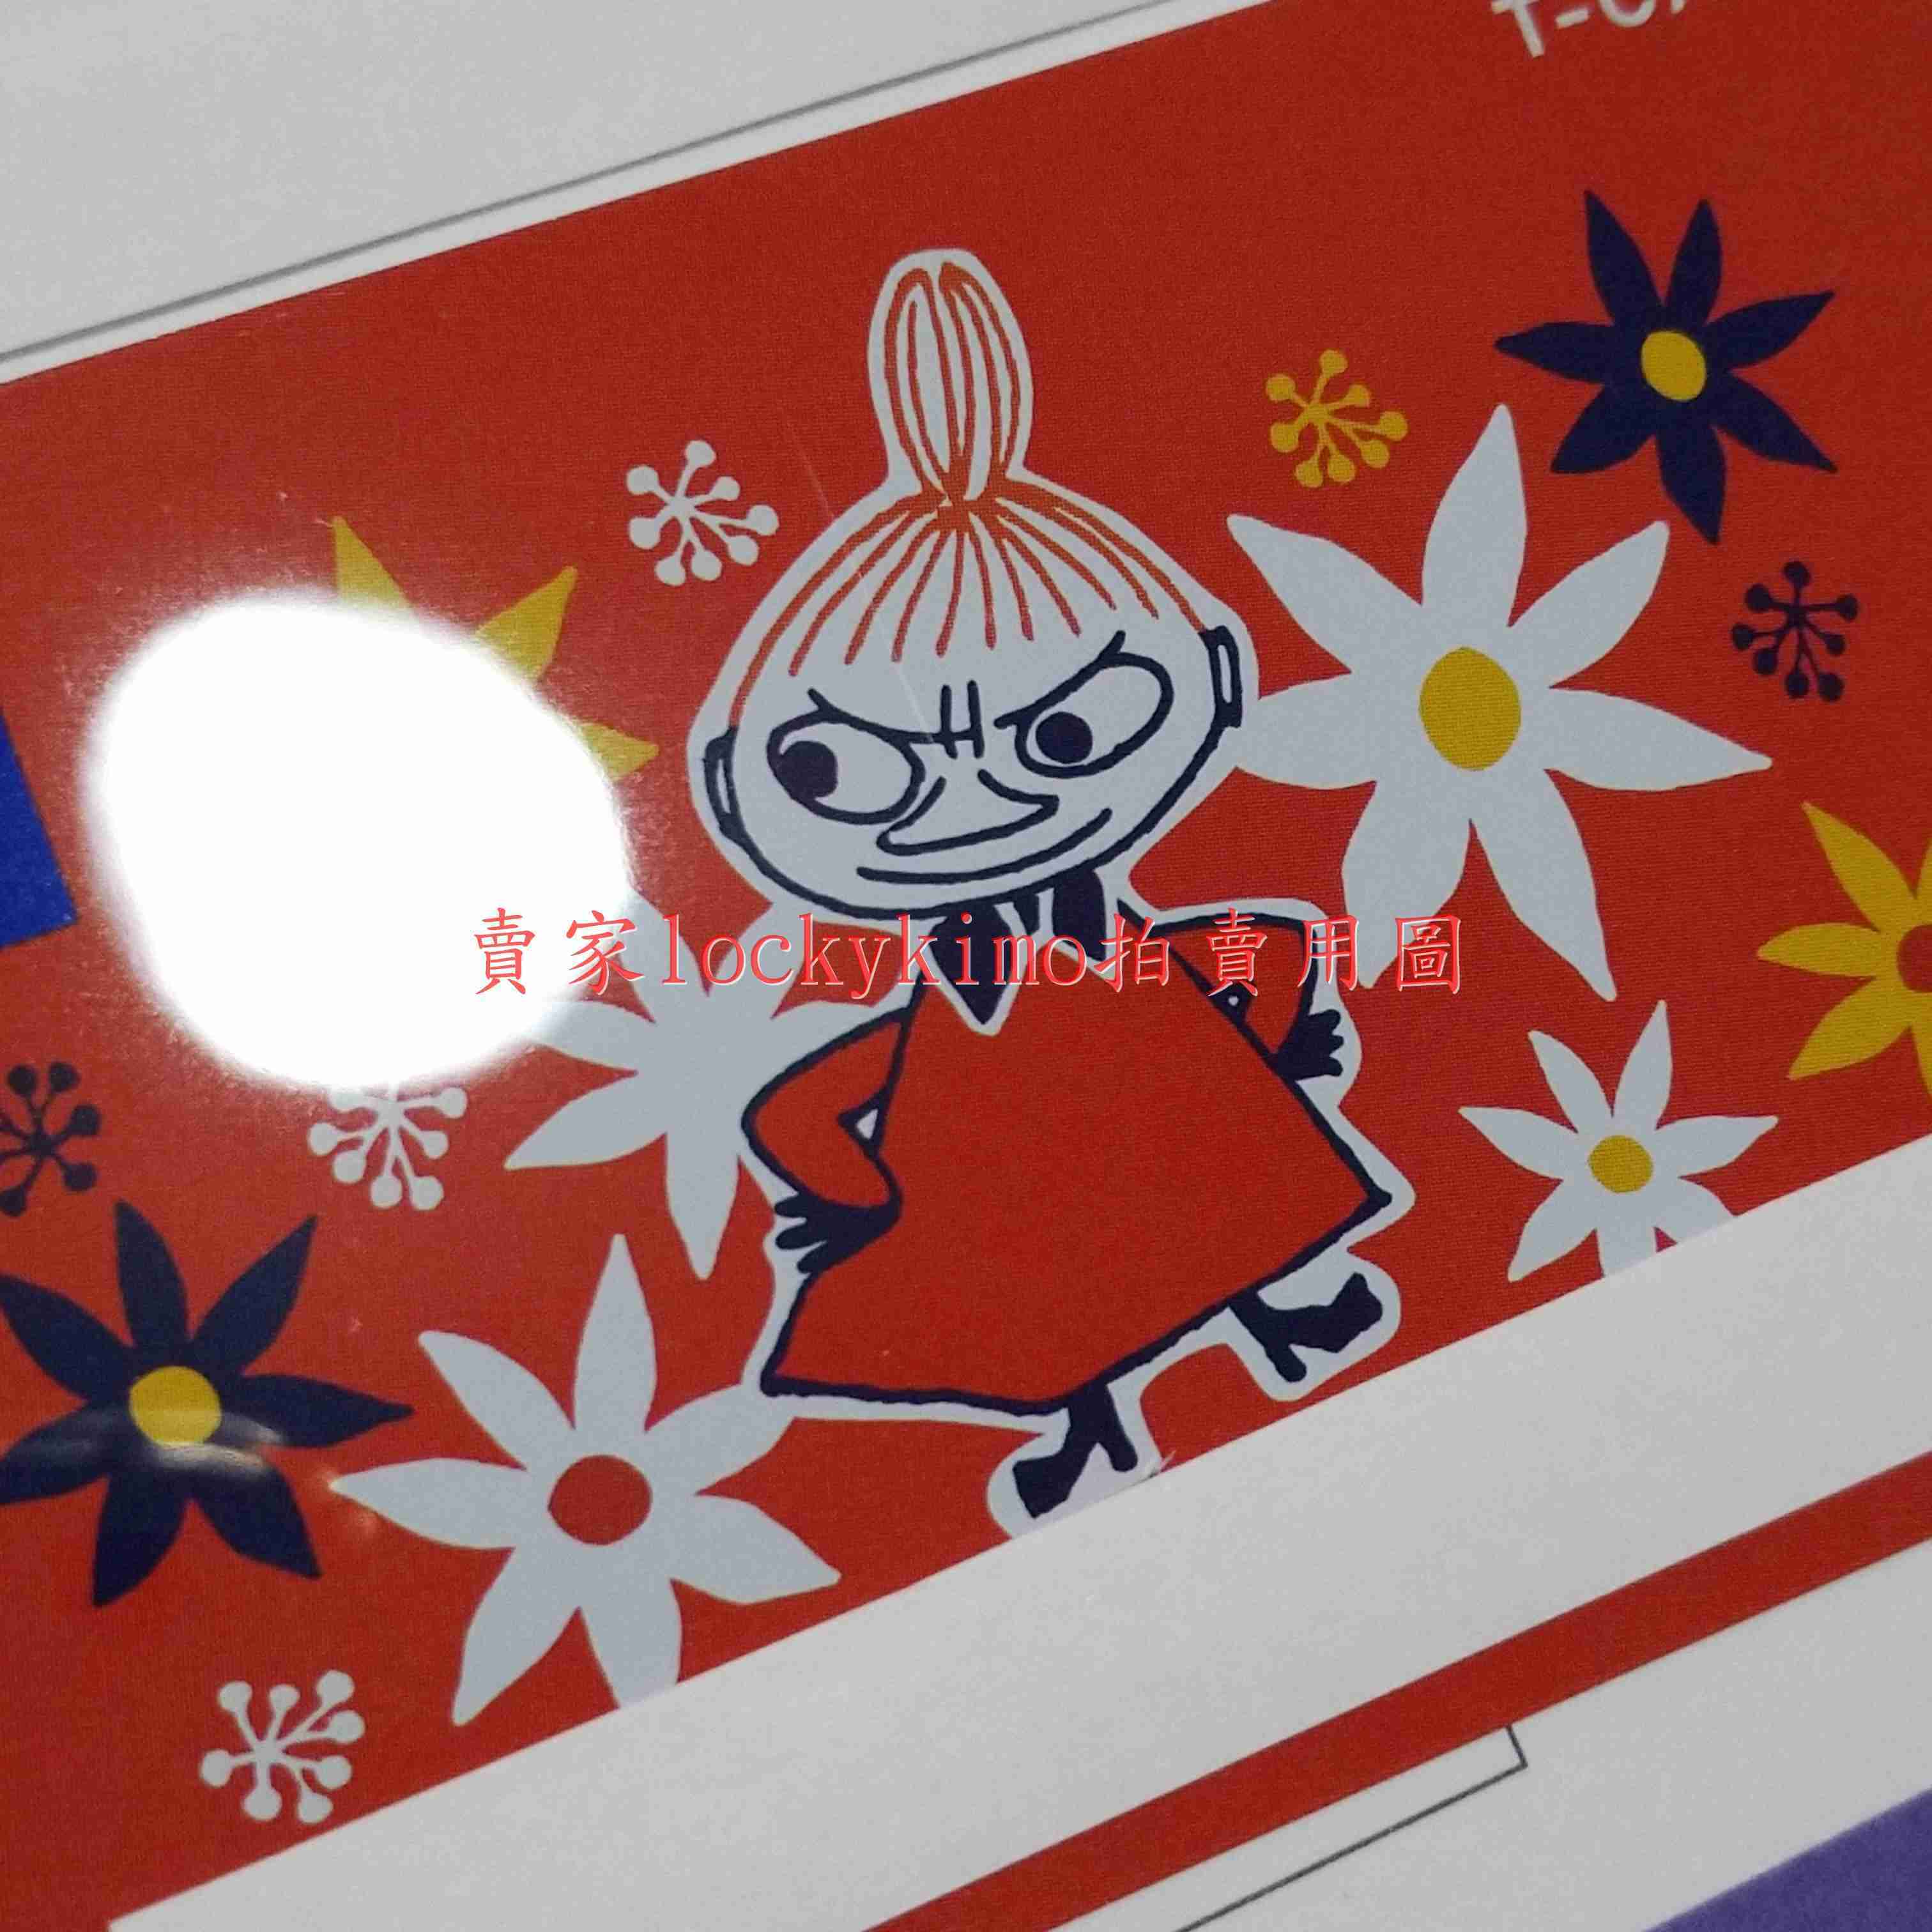 【小不點 T-CARD 收藏卡】嚕嚕米 Moomin 小美 Little My 米妮 姆明 T卡 T Card 珍藏卡